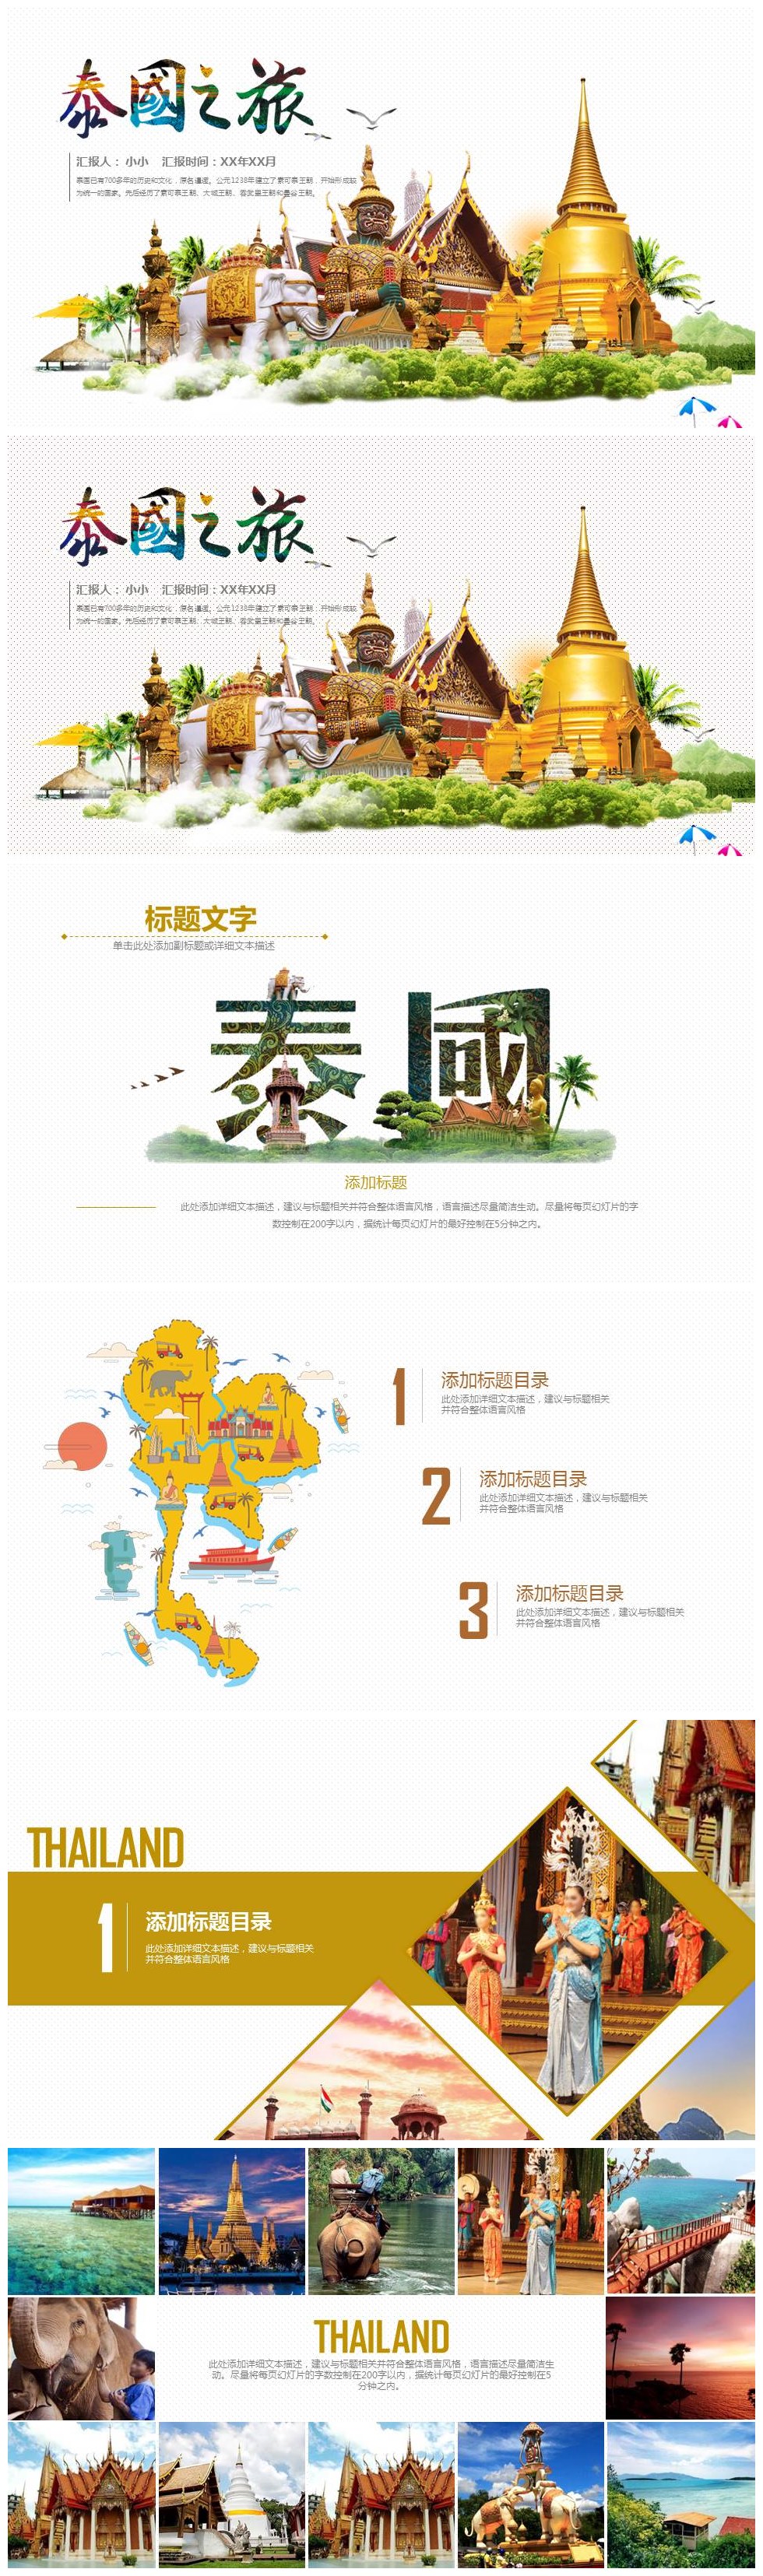 旅行社泰国之旅主题文化旅游宣传介绍ppt模板-聚给网